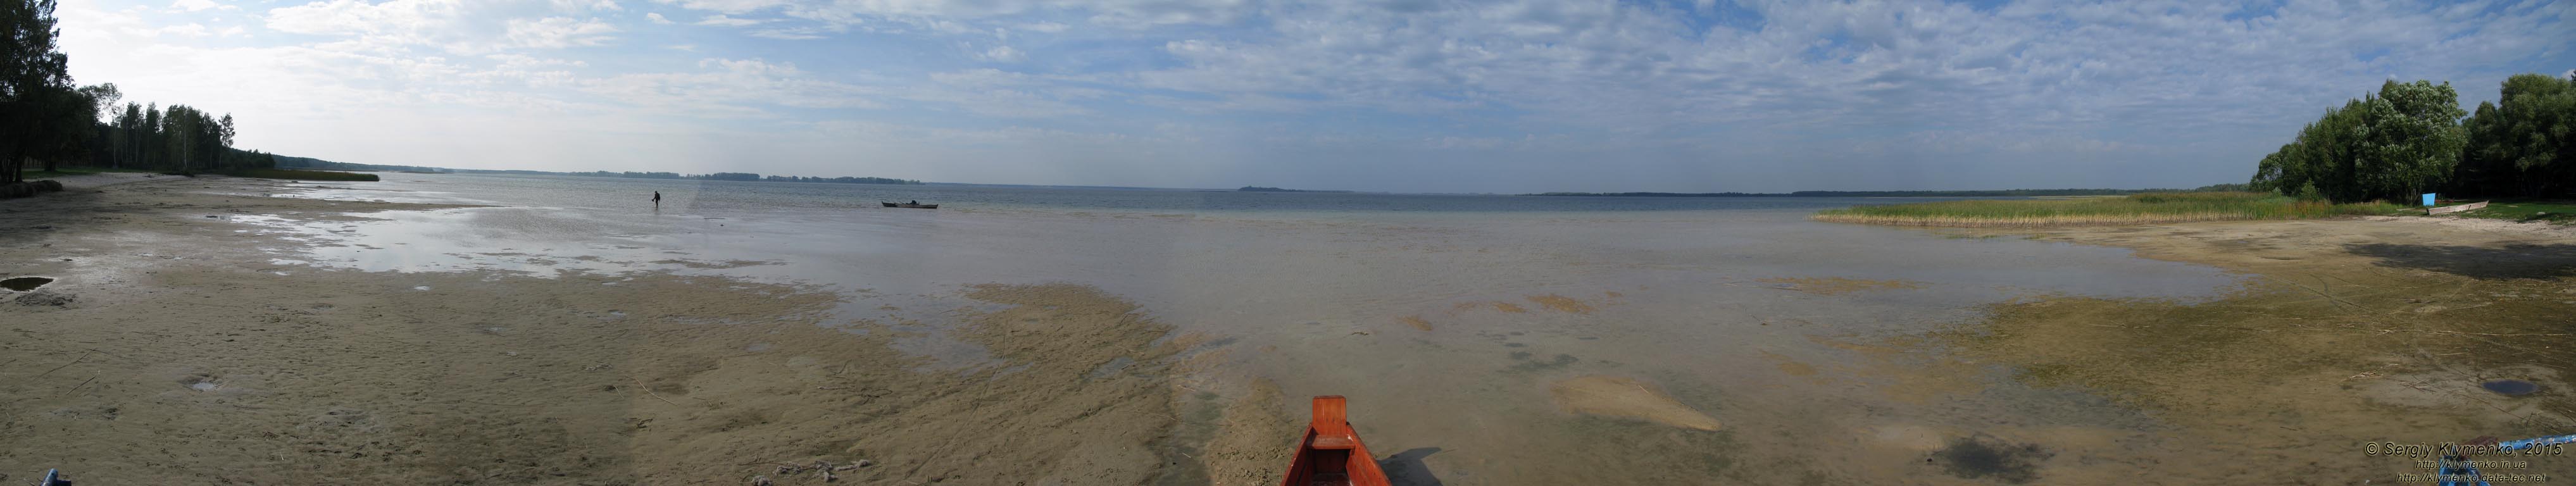 Волынь, Шацкие озёра. Фото. Живописный вид озера Свитязь. Панорама ~210° (51°30'46.60"N, 23°53'24.10"E).